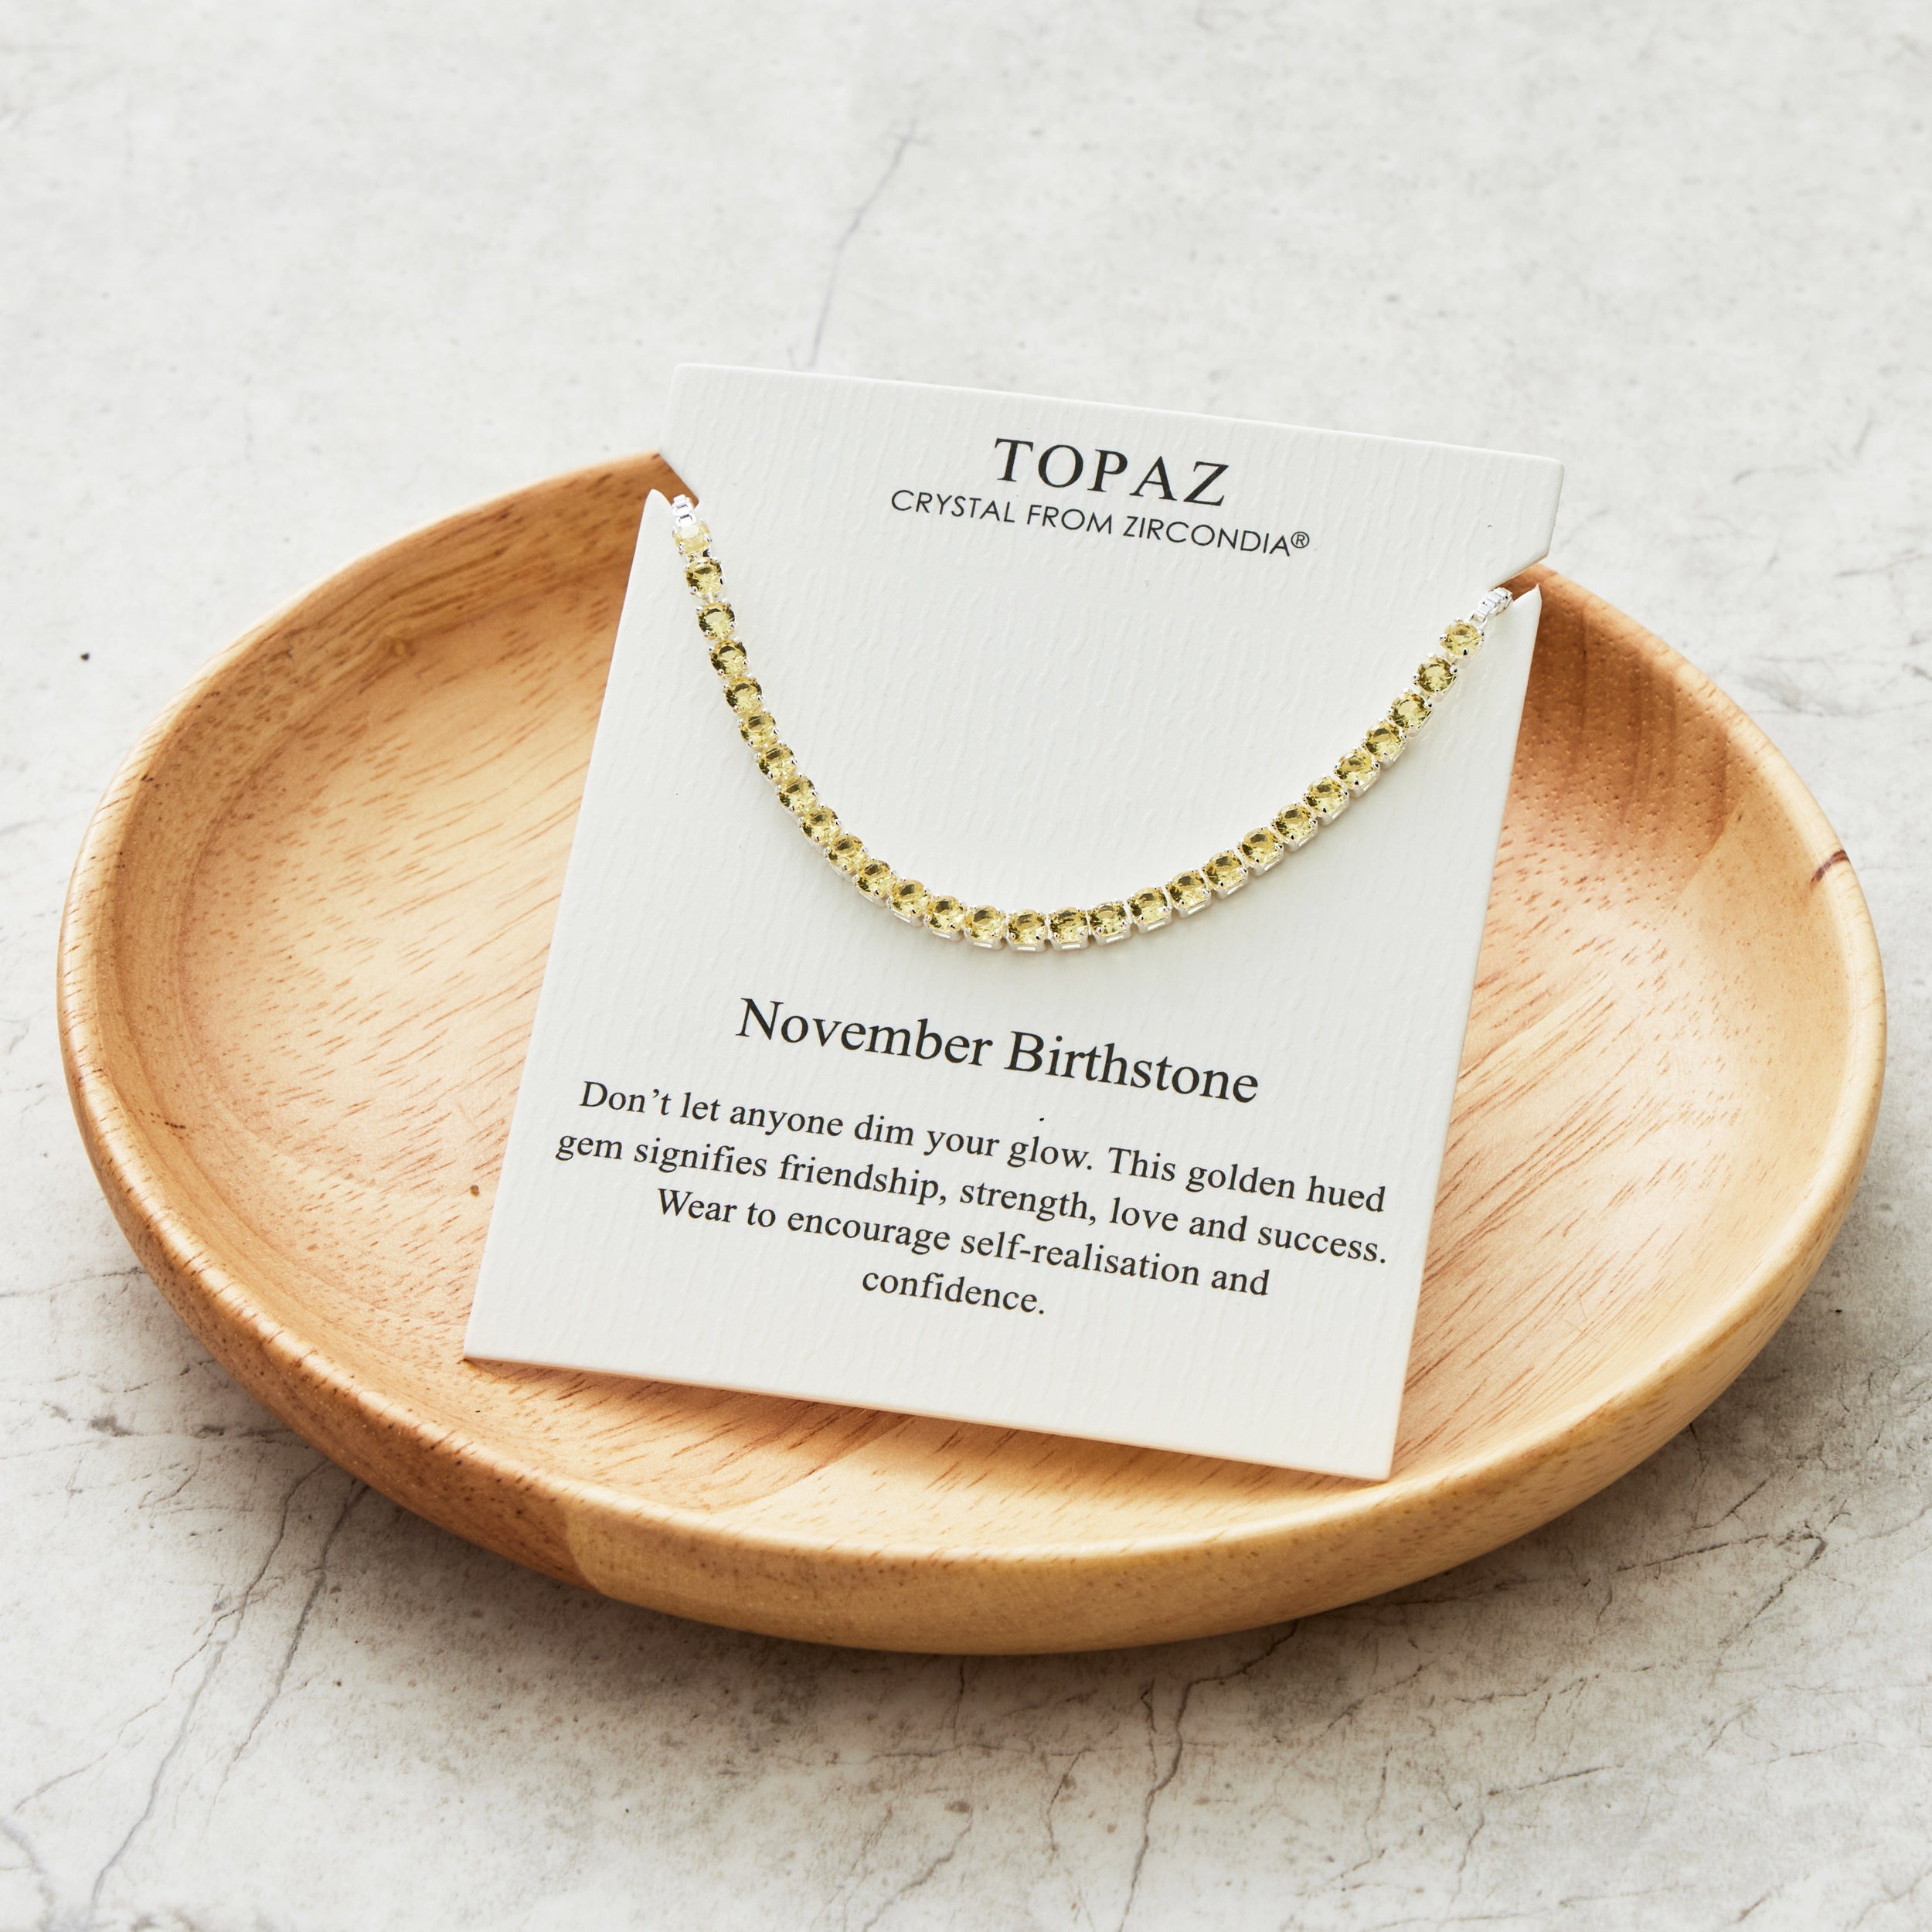 November Birthstone Friendship Bracelet with Topaz Zircondia® Crystals